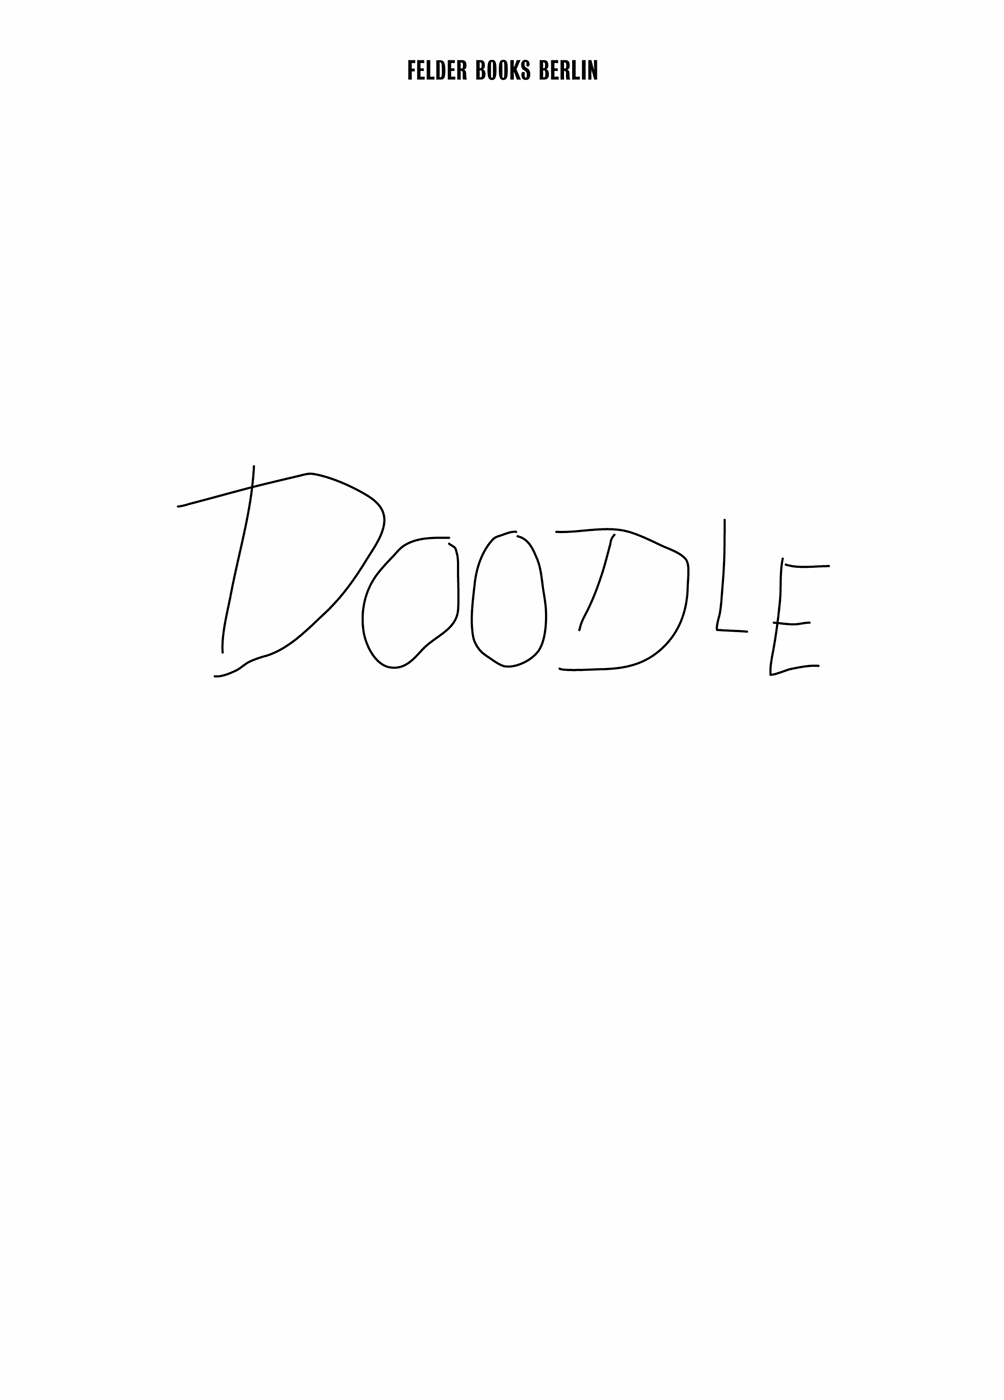 Doodle